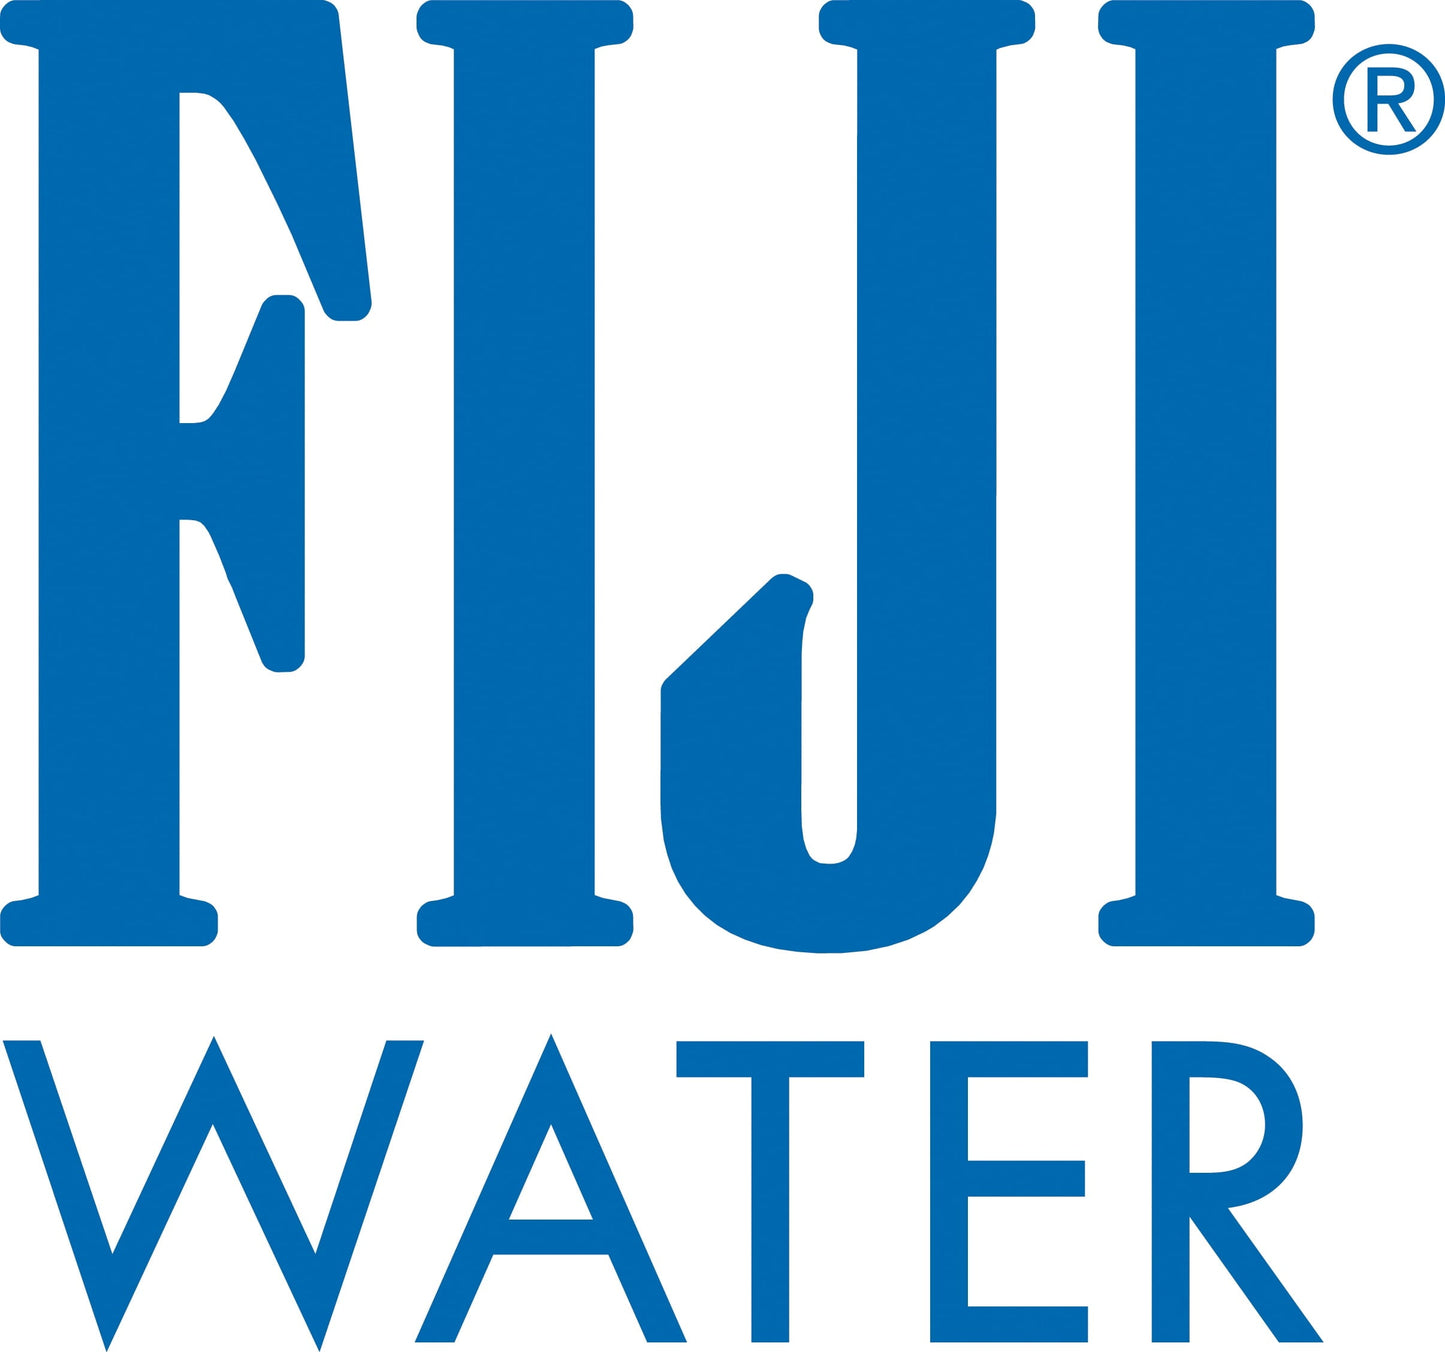 FIJI Natural Artesian Water, 33.8 Fl Oz (Pack of 6)